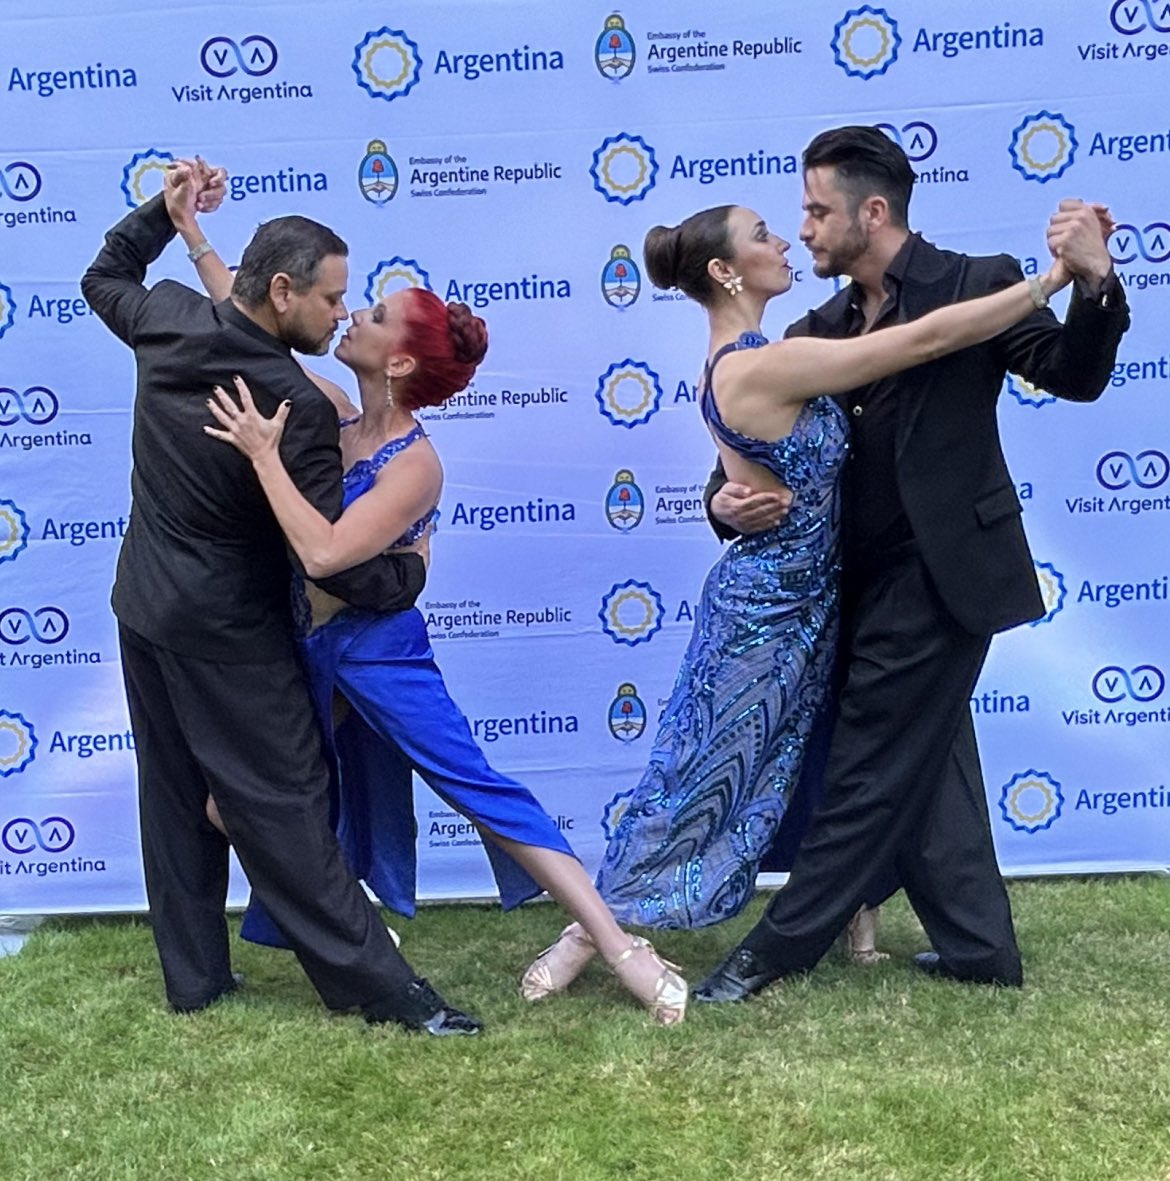 TANGO ARGENTINO EN BERNA 
🇦🇷🇨🇭

Junto a @InproturArg, continuamos promoviendo el Tango argentino en Suiza. 
Dos parejas estupendas, Sonia & Mario y Martina & Alexander, deleitaron con su baile a empresarios del sector turístico en la residencia del embajador @GustavoPandiani.